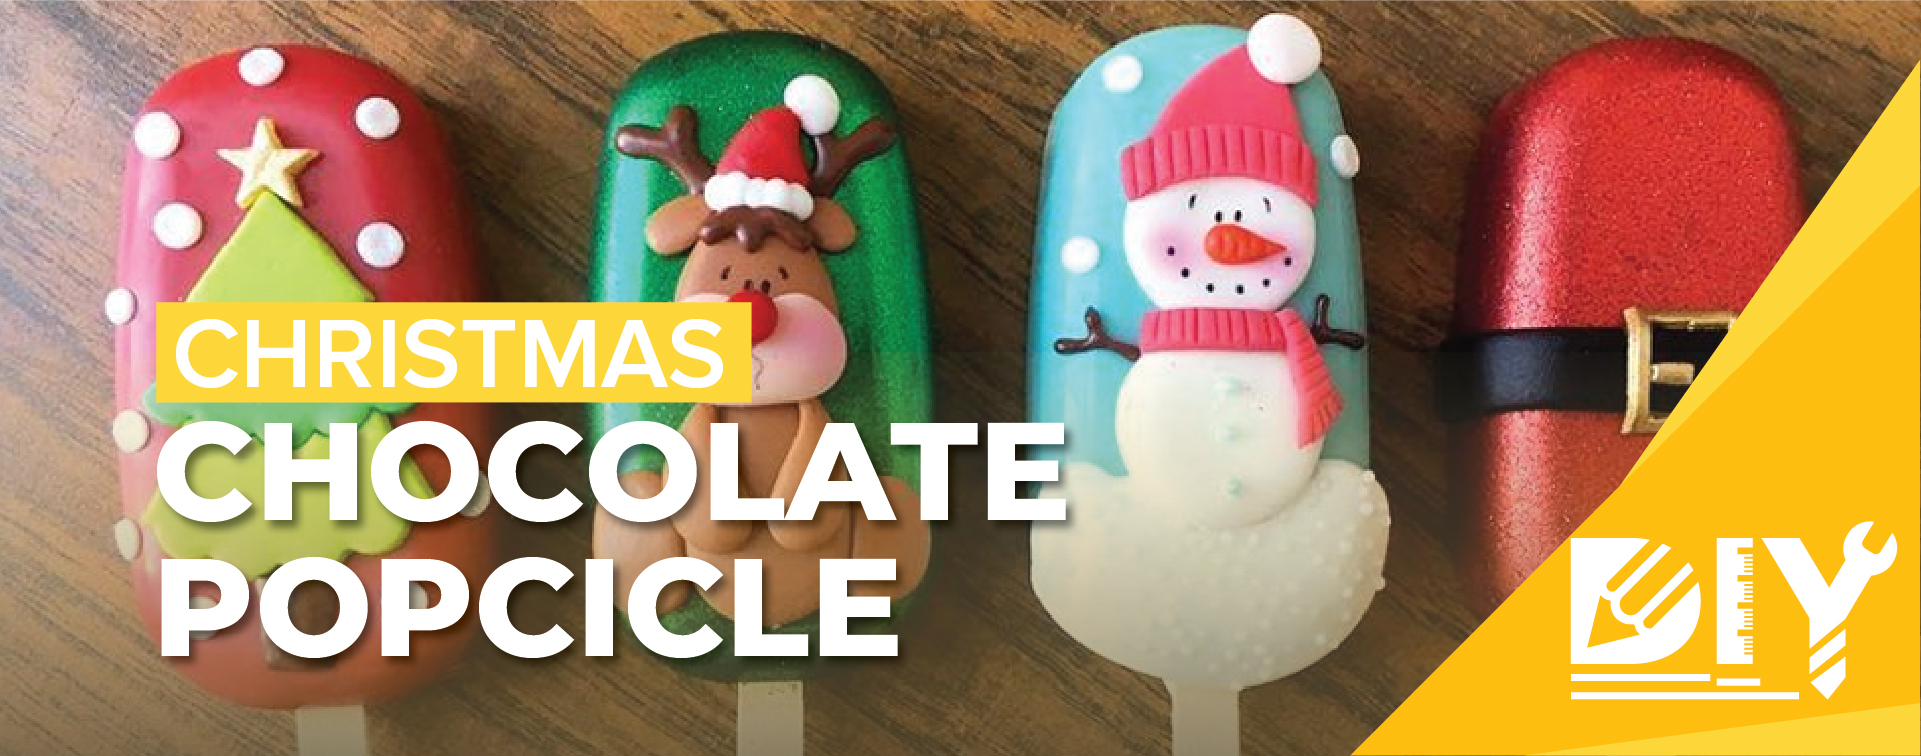 DIY Christmas Chocolate Popcicle